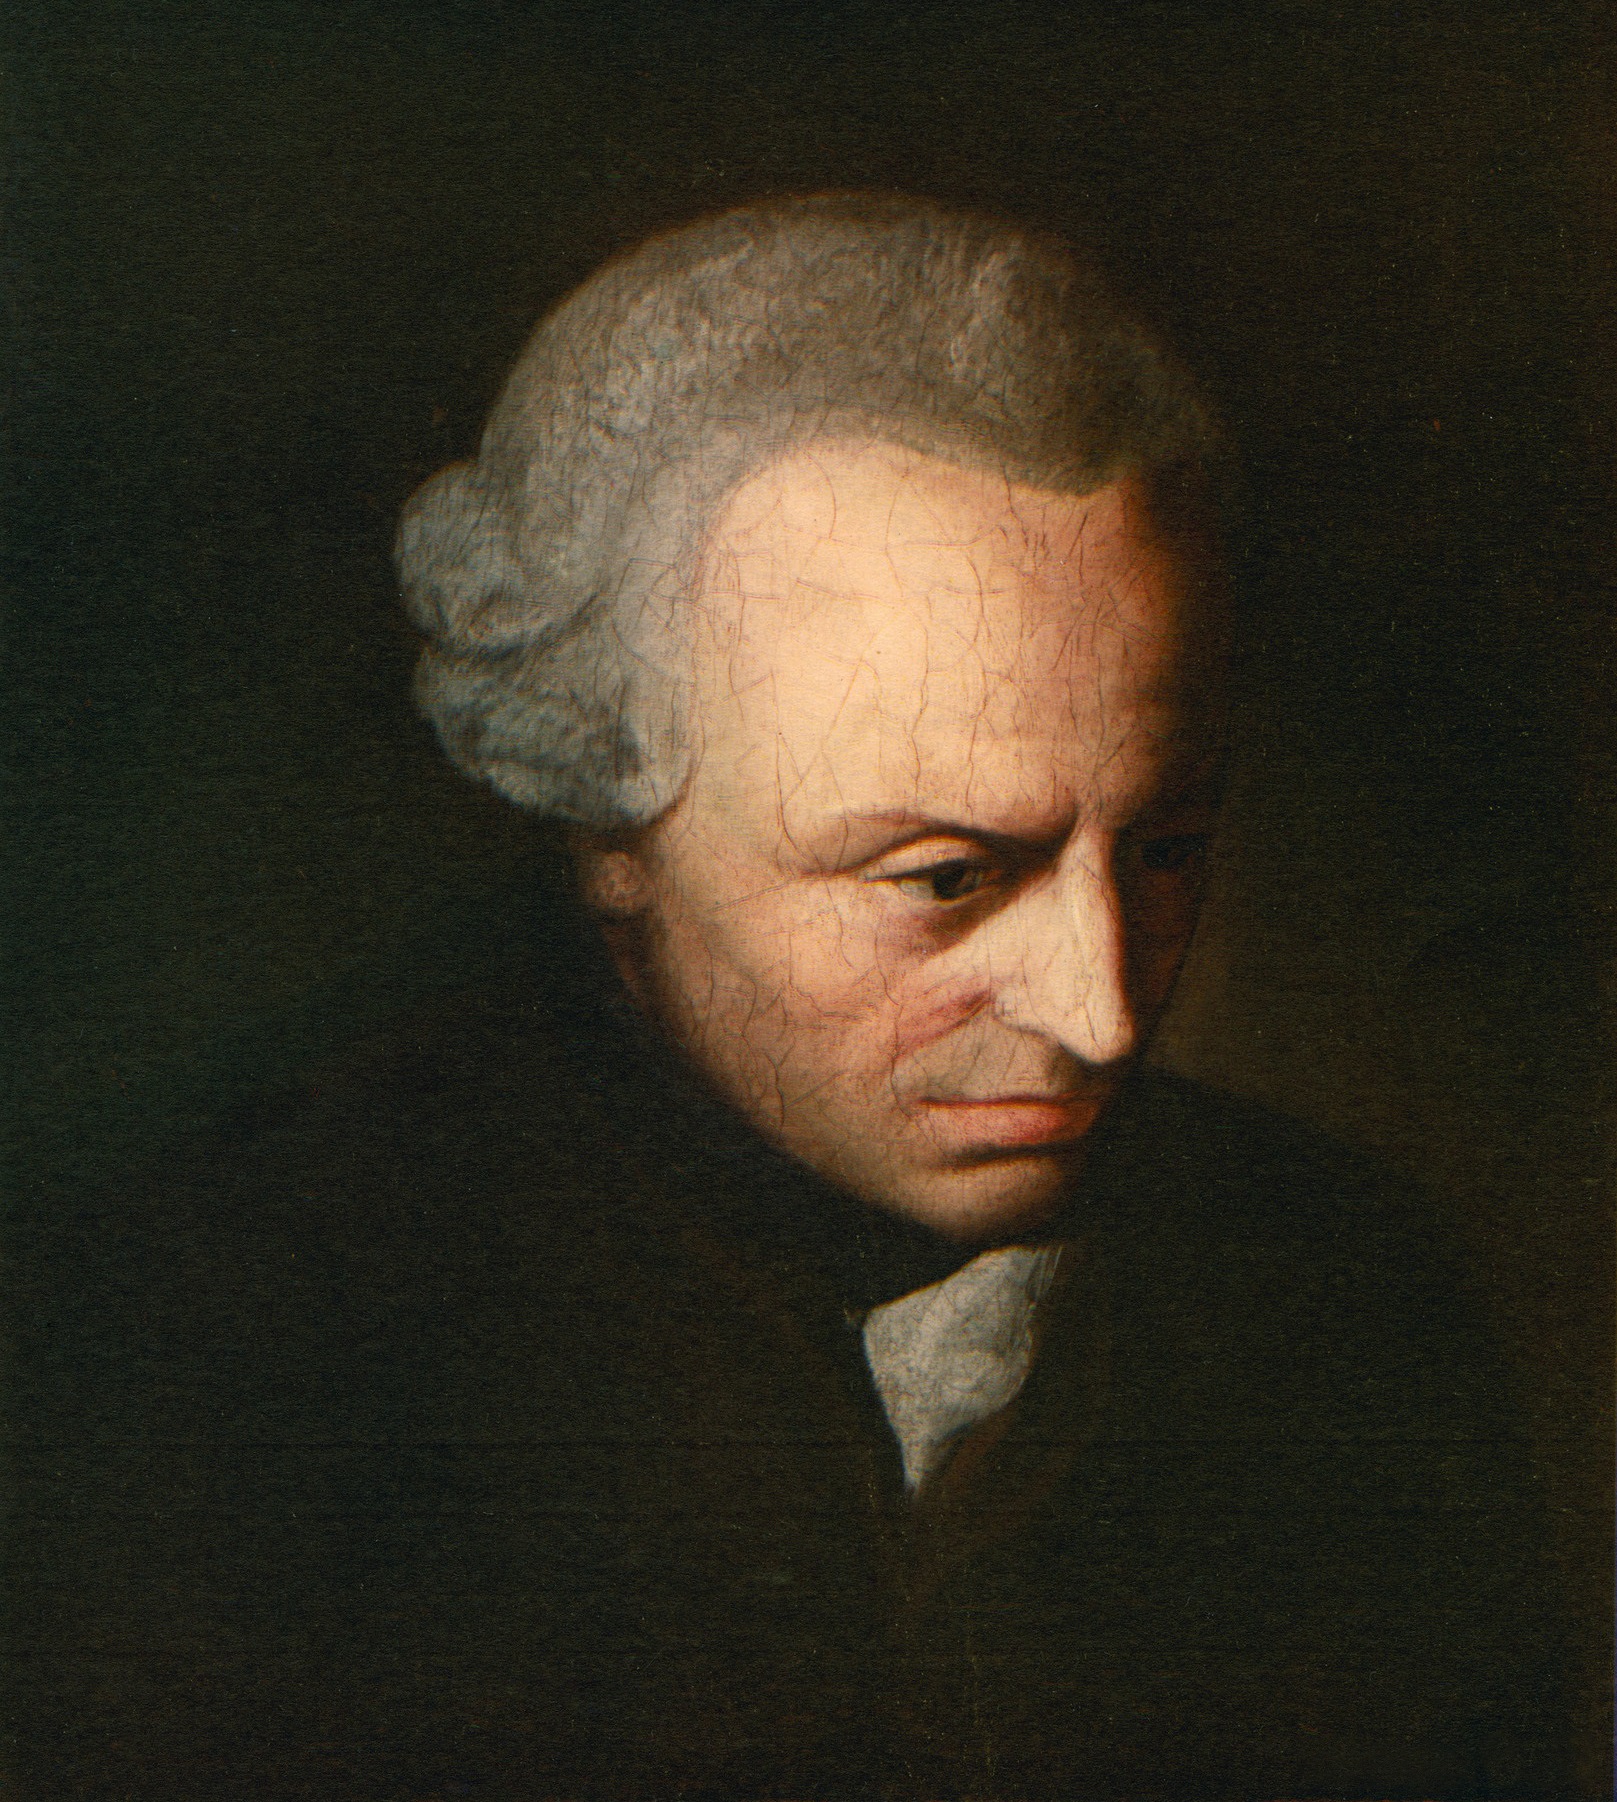 Retrat del filòsof Immanuel Kant